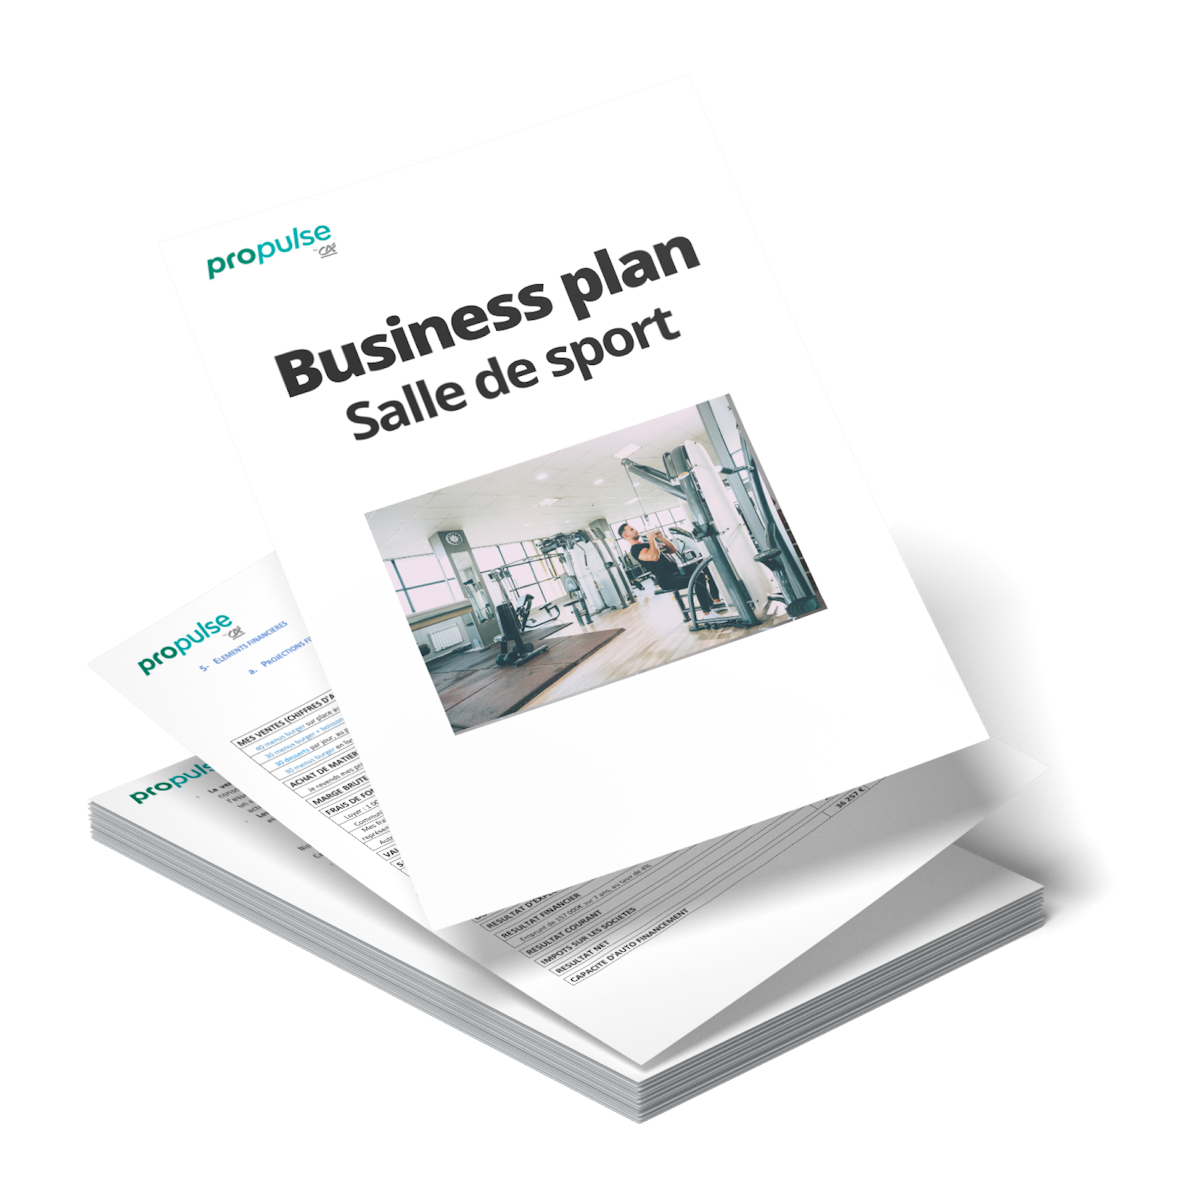 exemple business plan salle de sport pdf